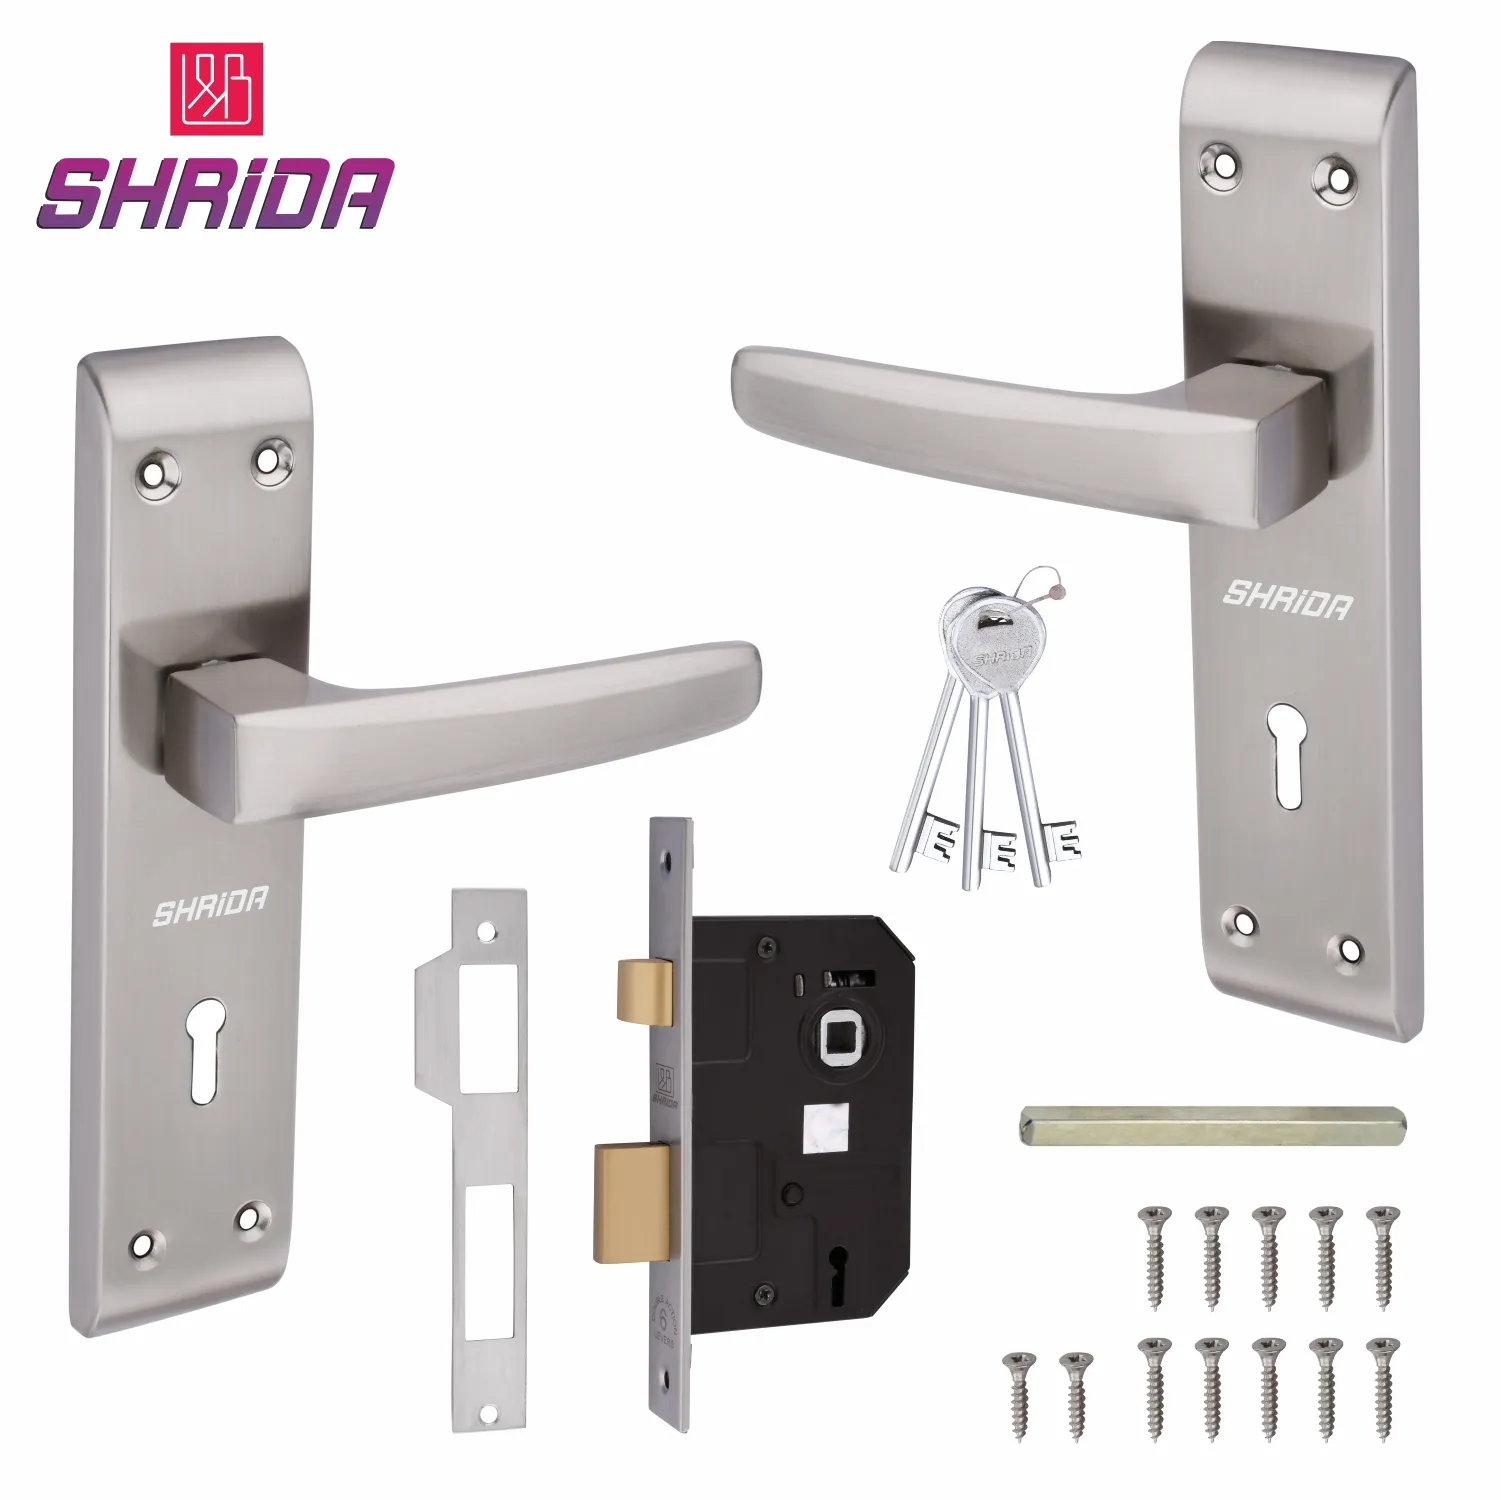 Shrida 503 Iron Mortise Handle and Lock Set